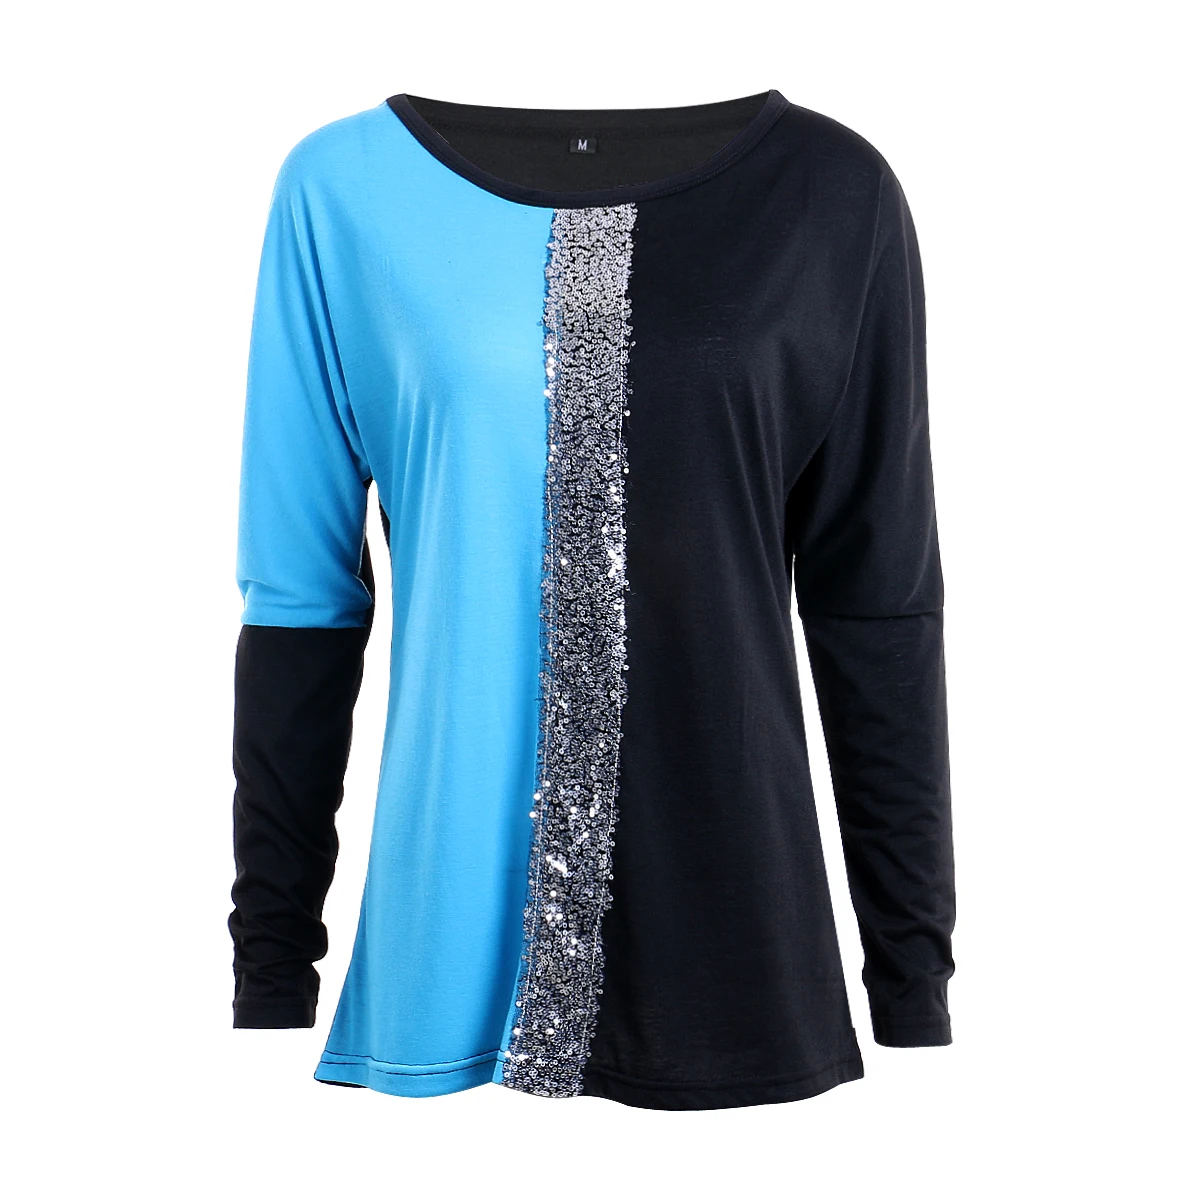 Женская свободная футболка с длинным рукавом Топы оверсайз футболка с открытыми плечами пуловер - Цвет: Синий